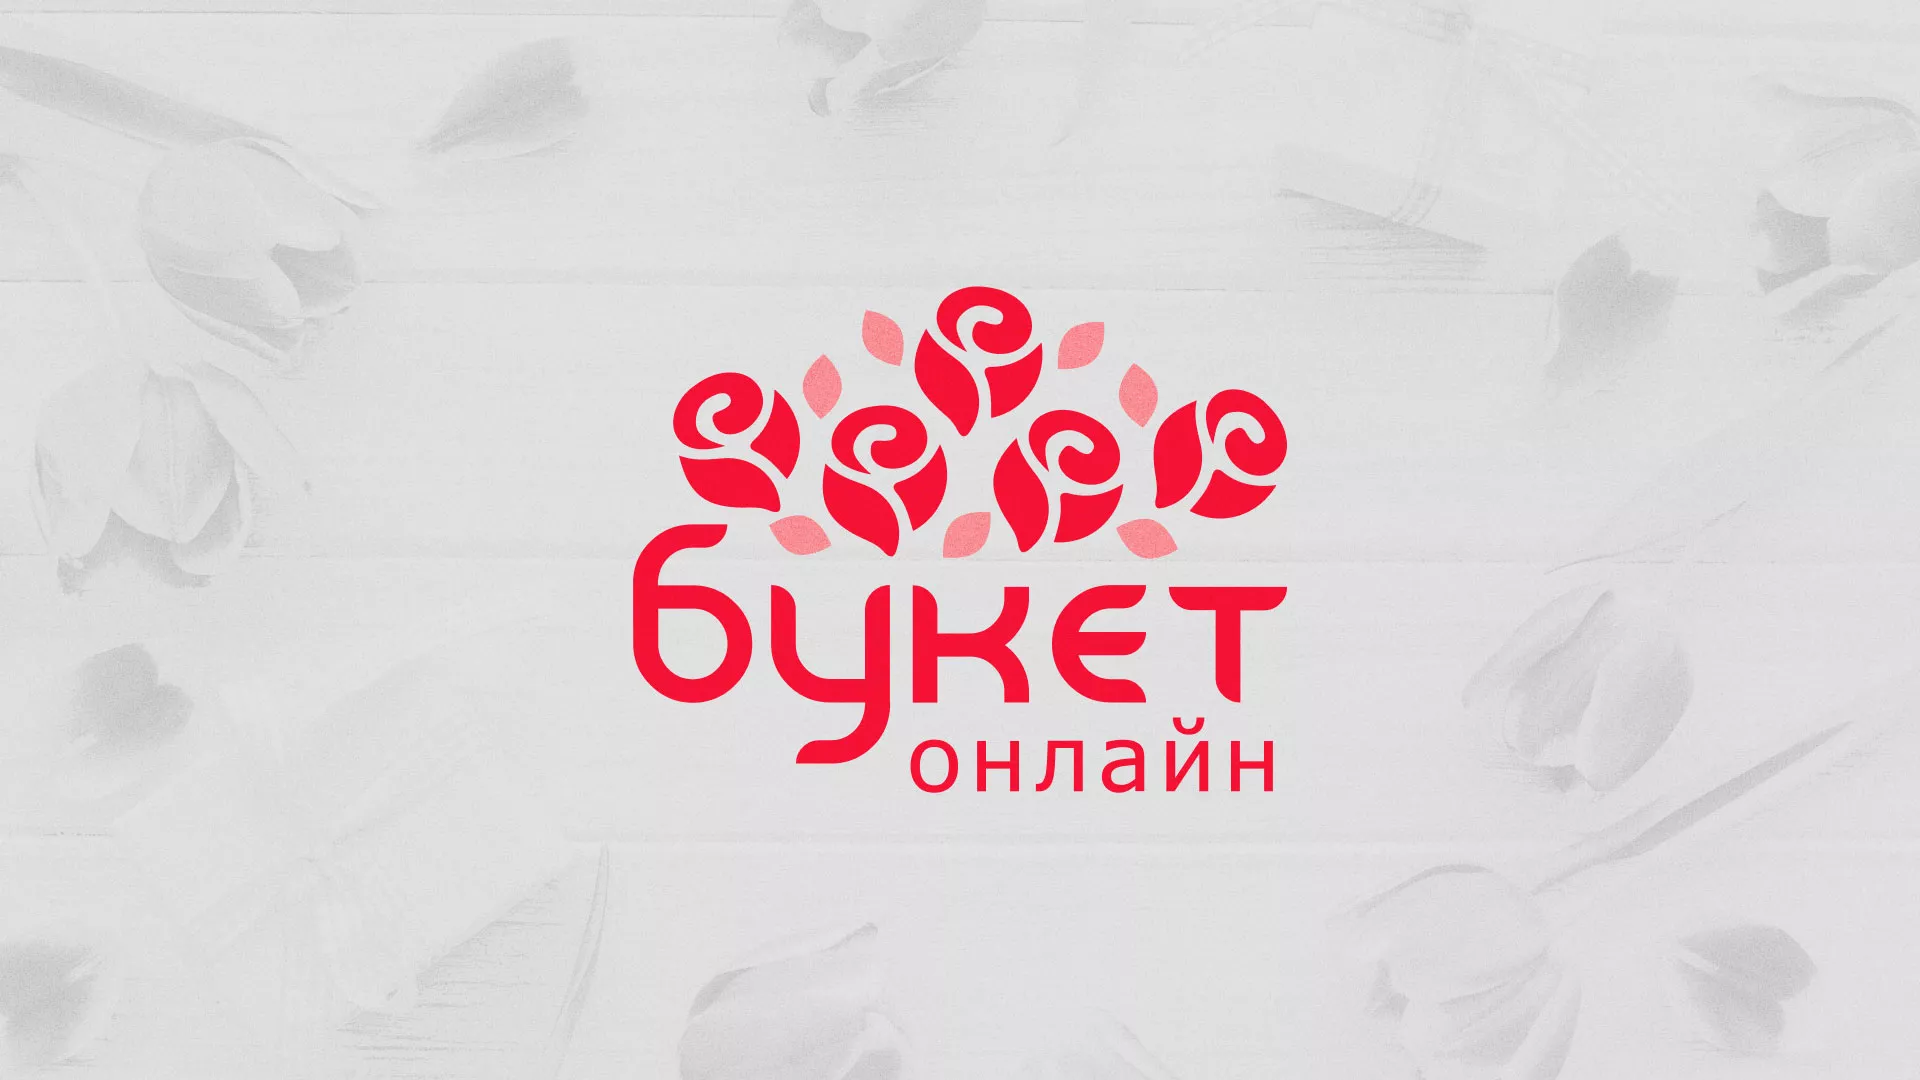 Создание интернет-магазина «Букет-онлайн» по цветам в Задонске